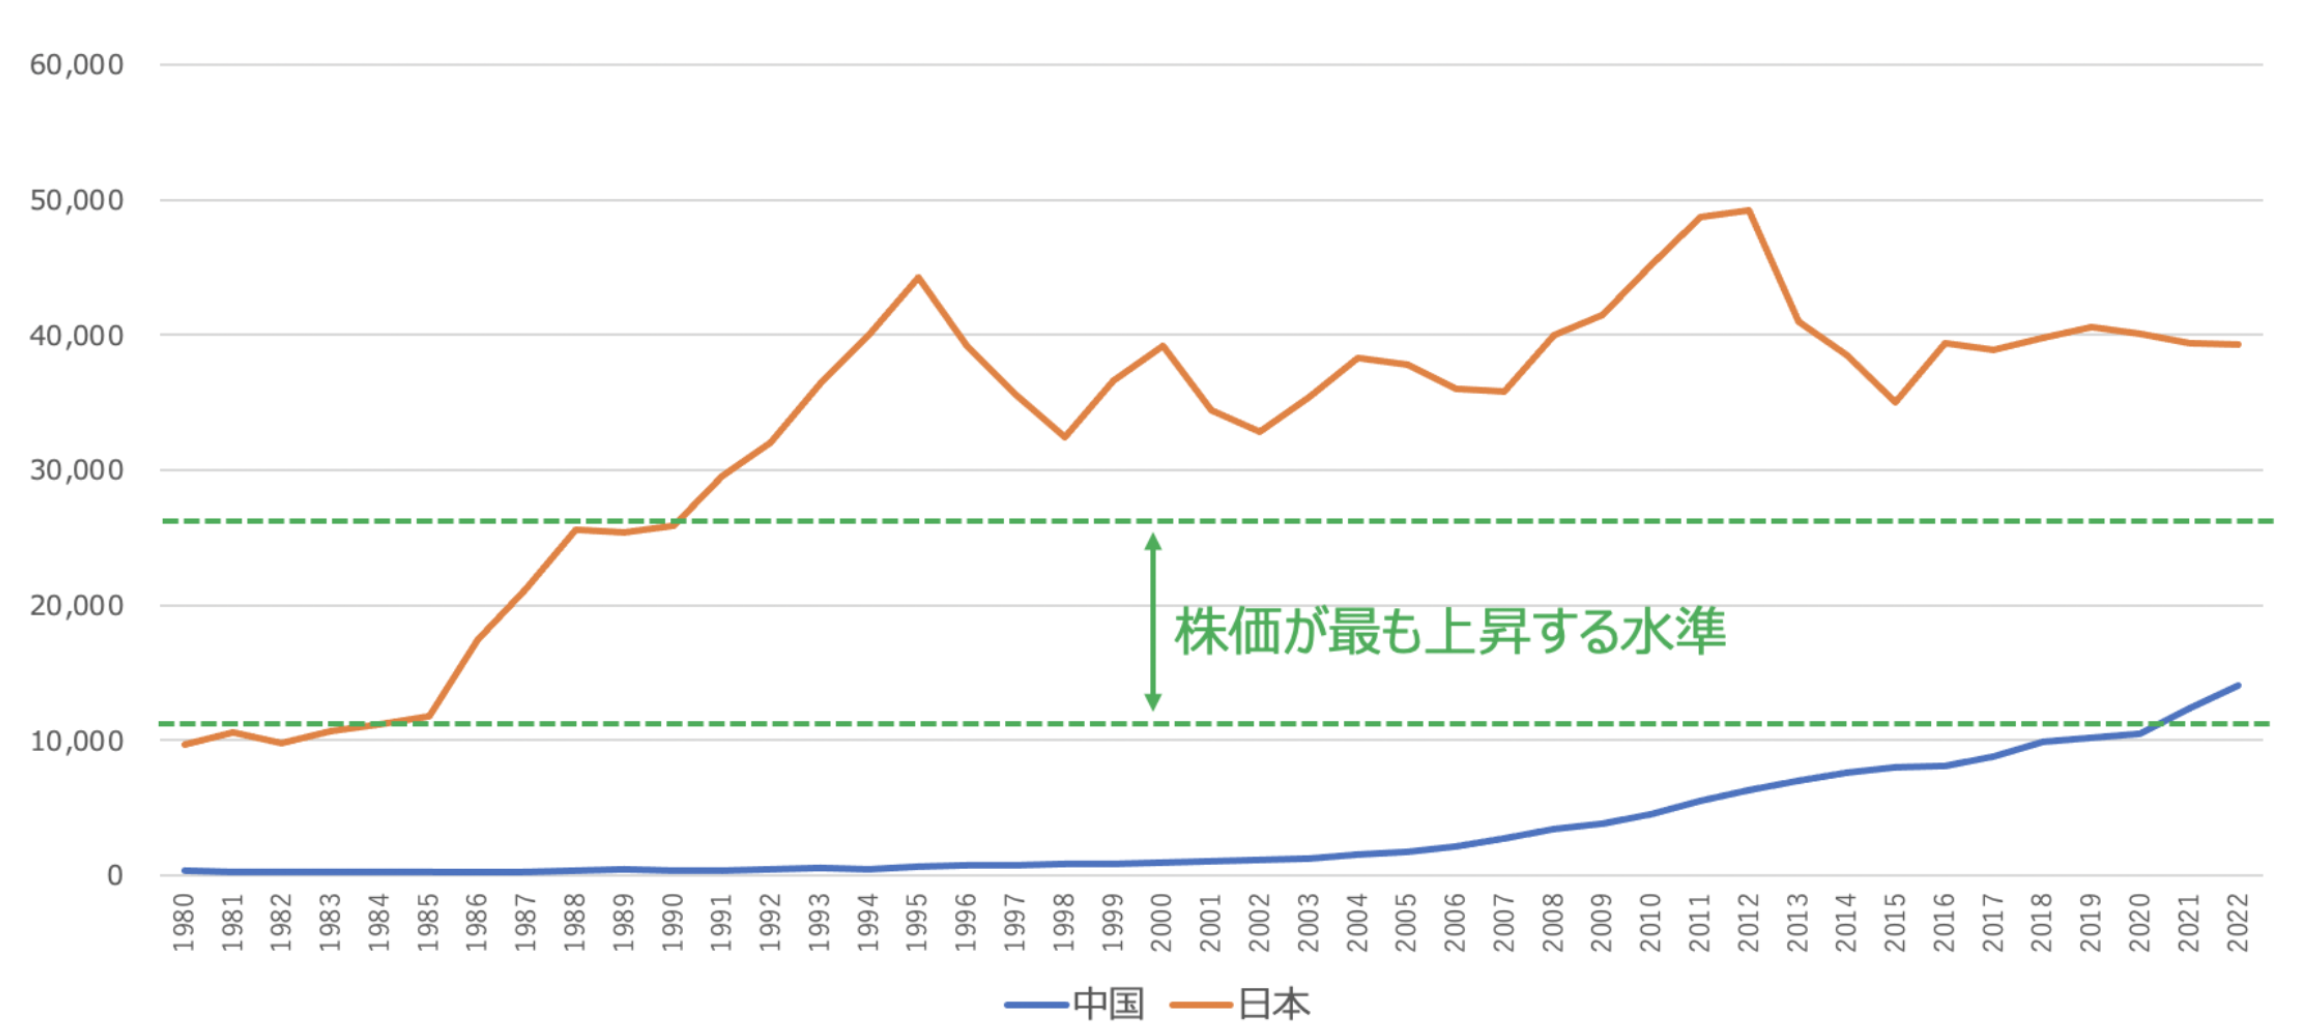 日本と中国の1人あたりGDPの推移